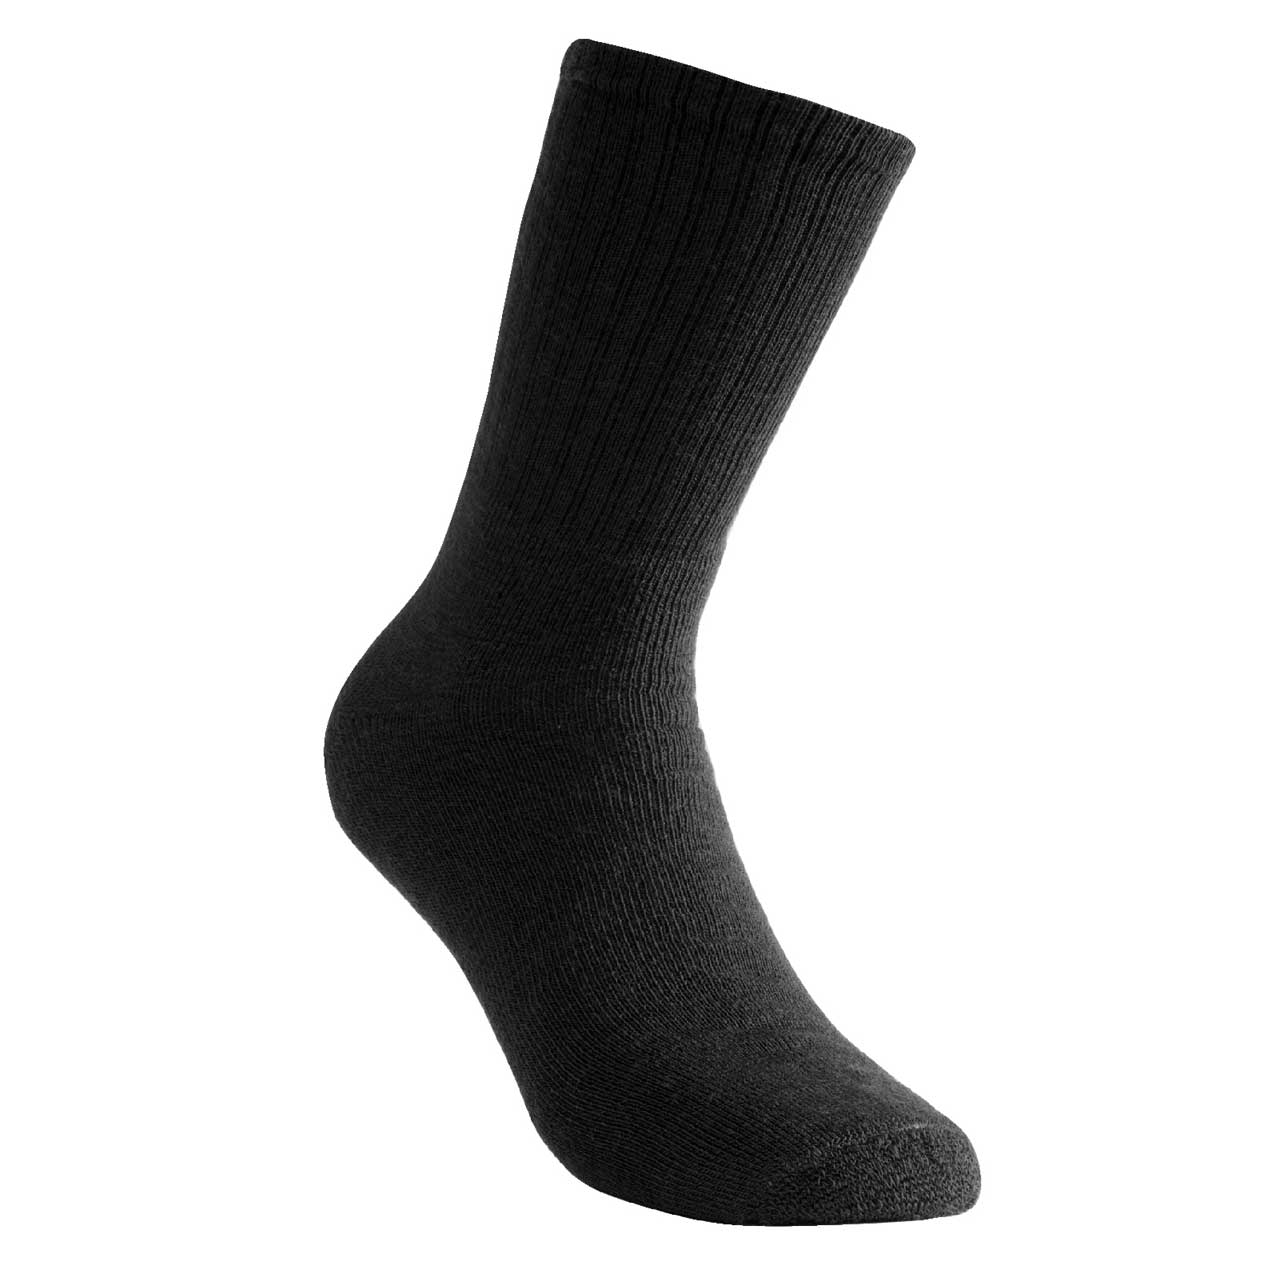 Woolpower Socken 200 - schwarz, 36-39